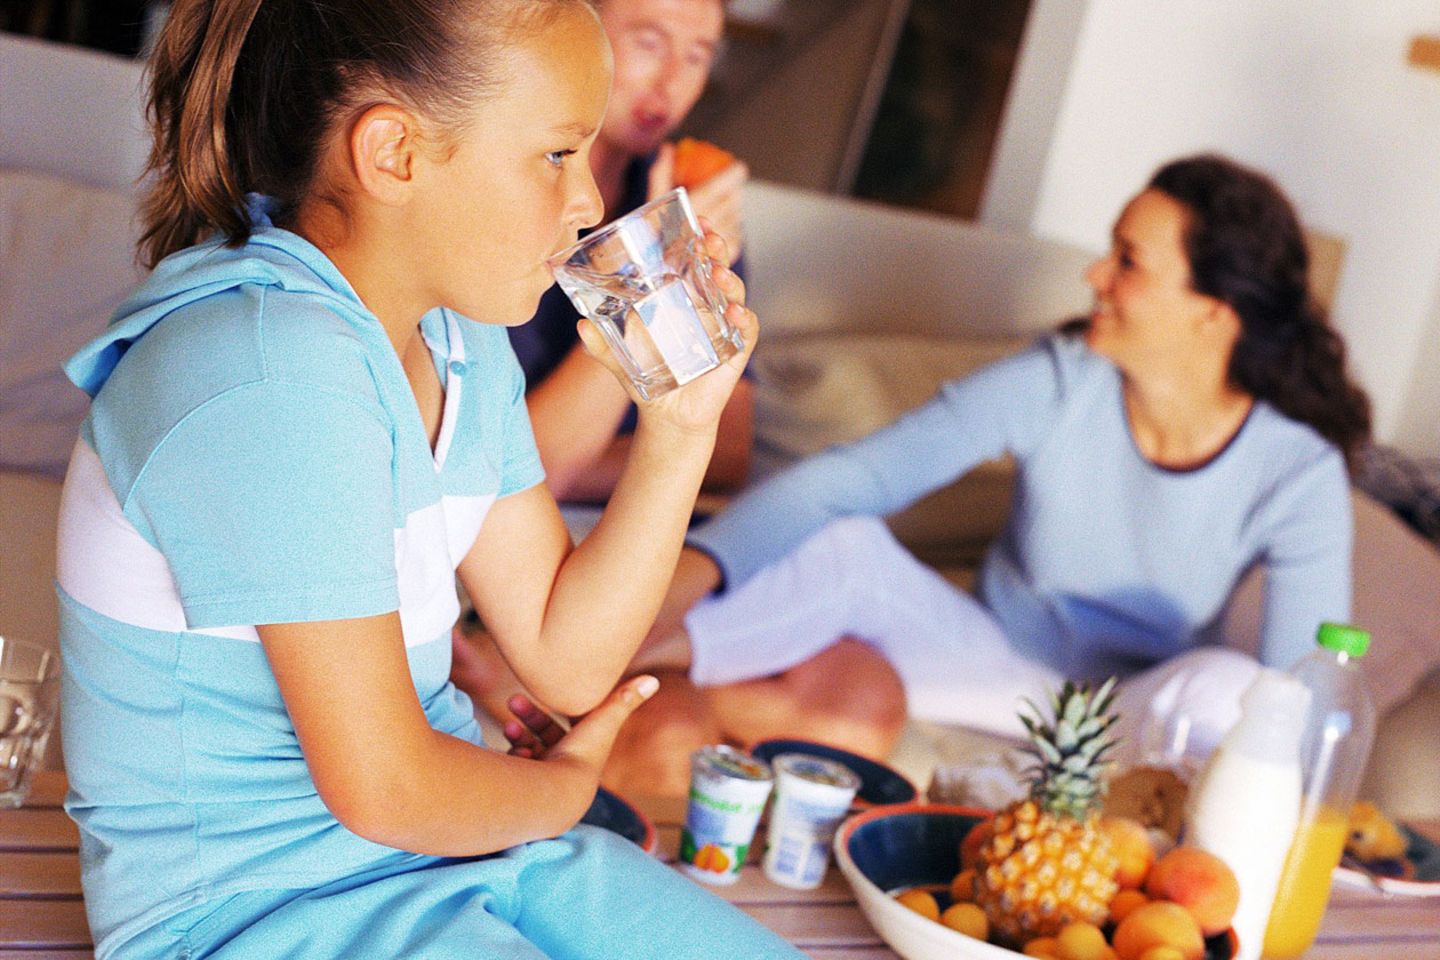 Kinder leiden recht häufig an Lebensmittelallergien. Eltern müssen daher oft eigentlich gesunde Nahrungsmittel vom Speiseplan streichen